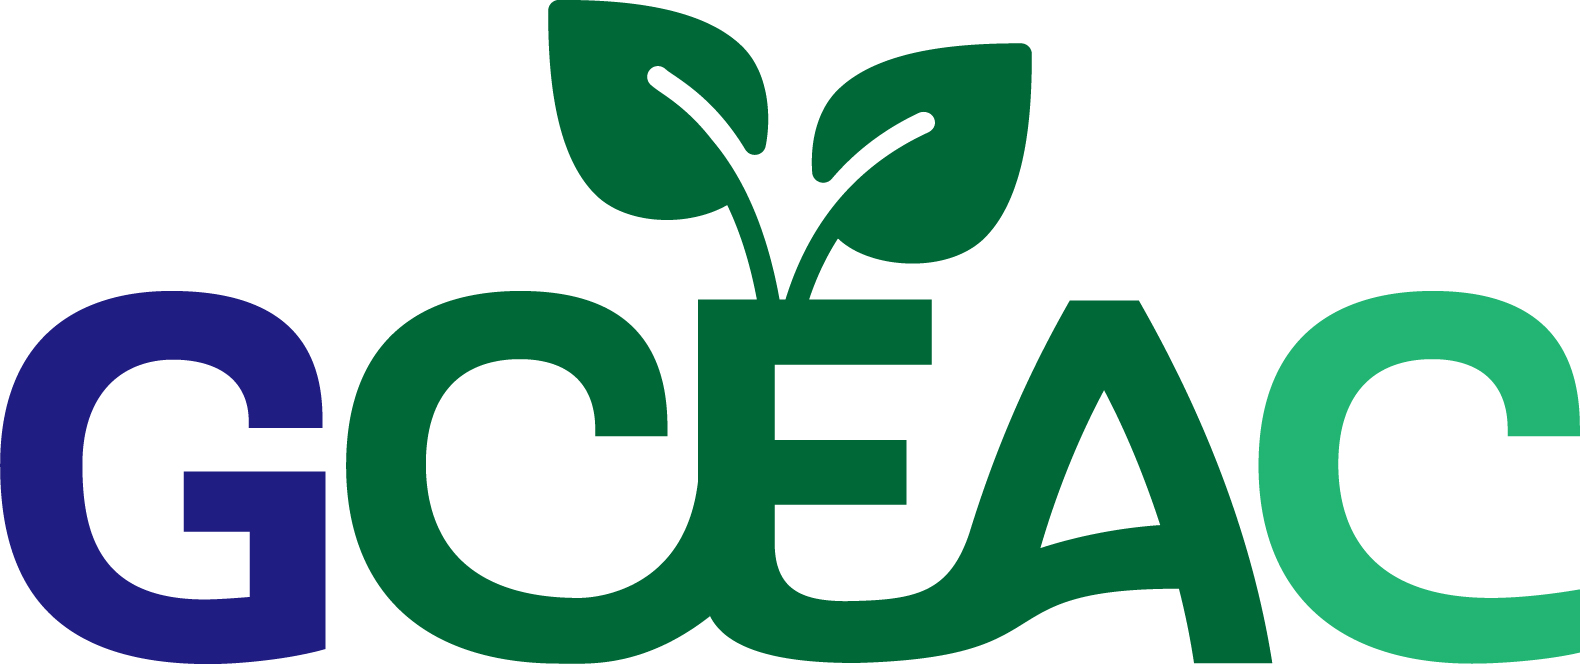 UC ANR GCEAC Logo